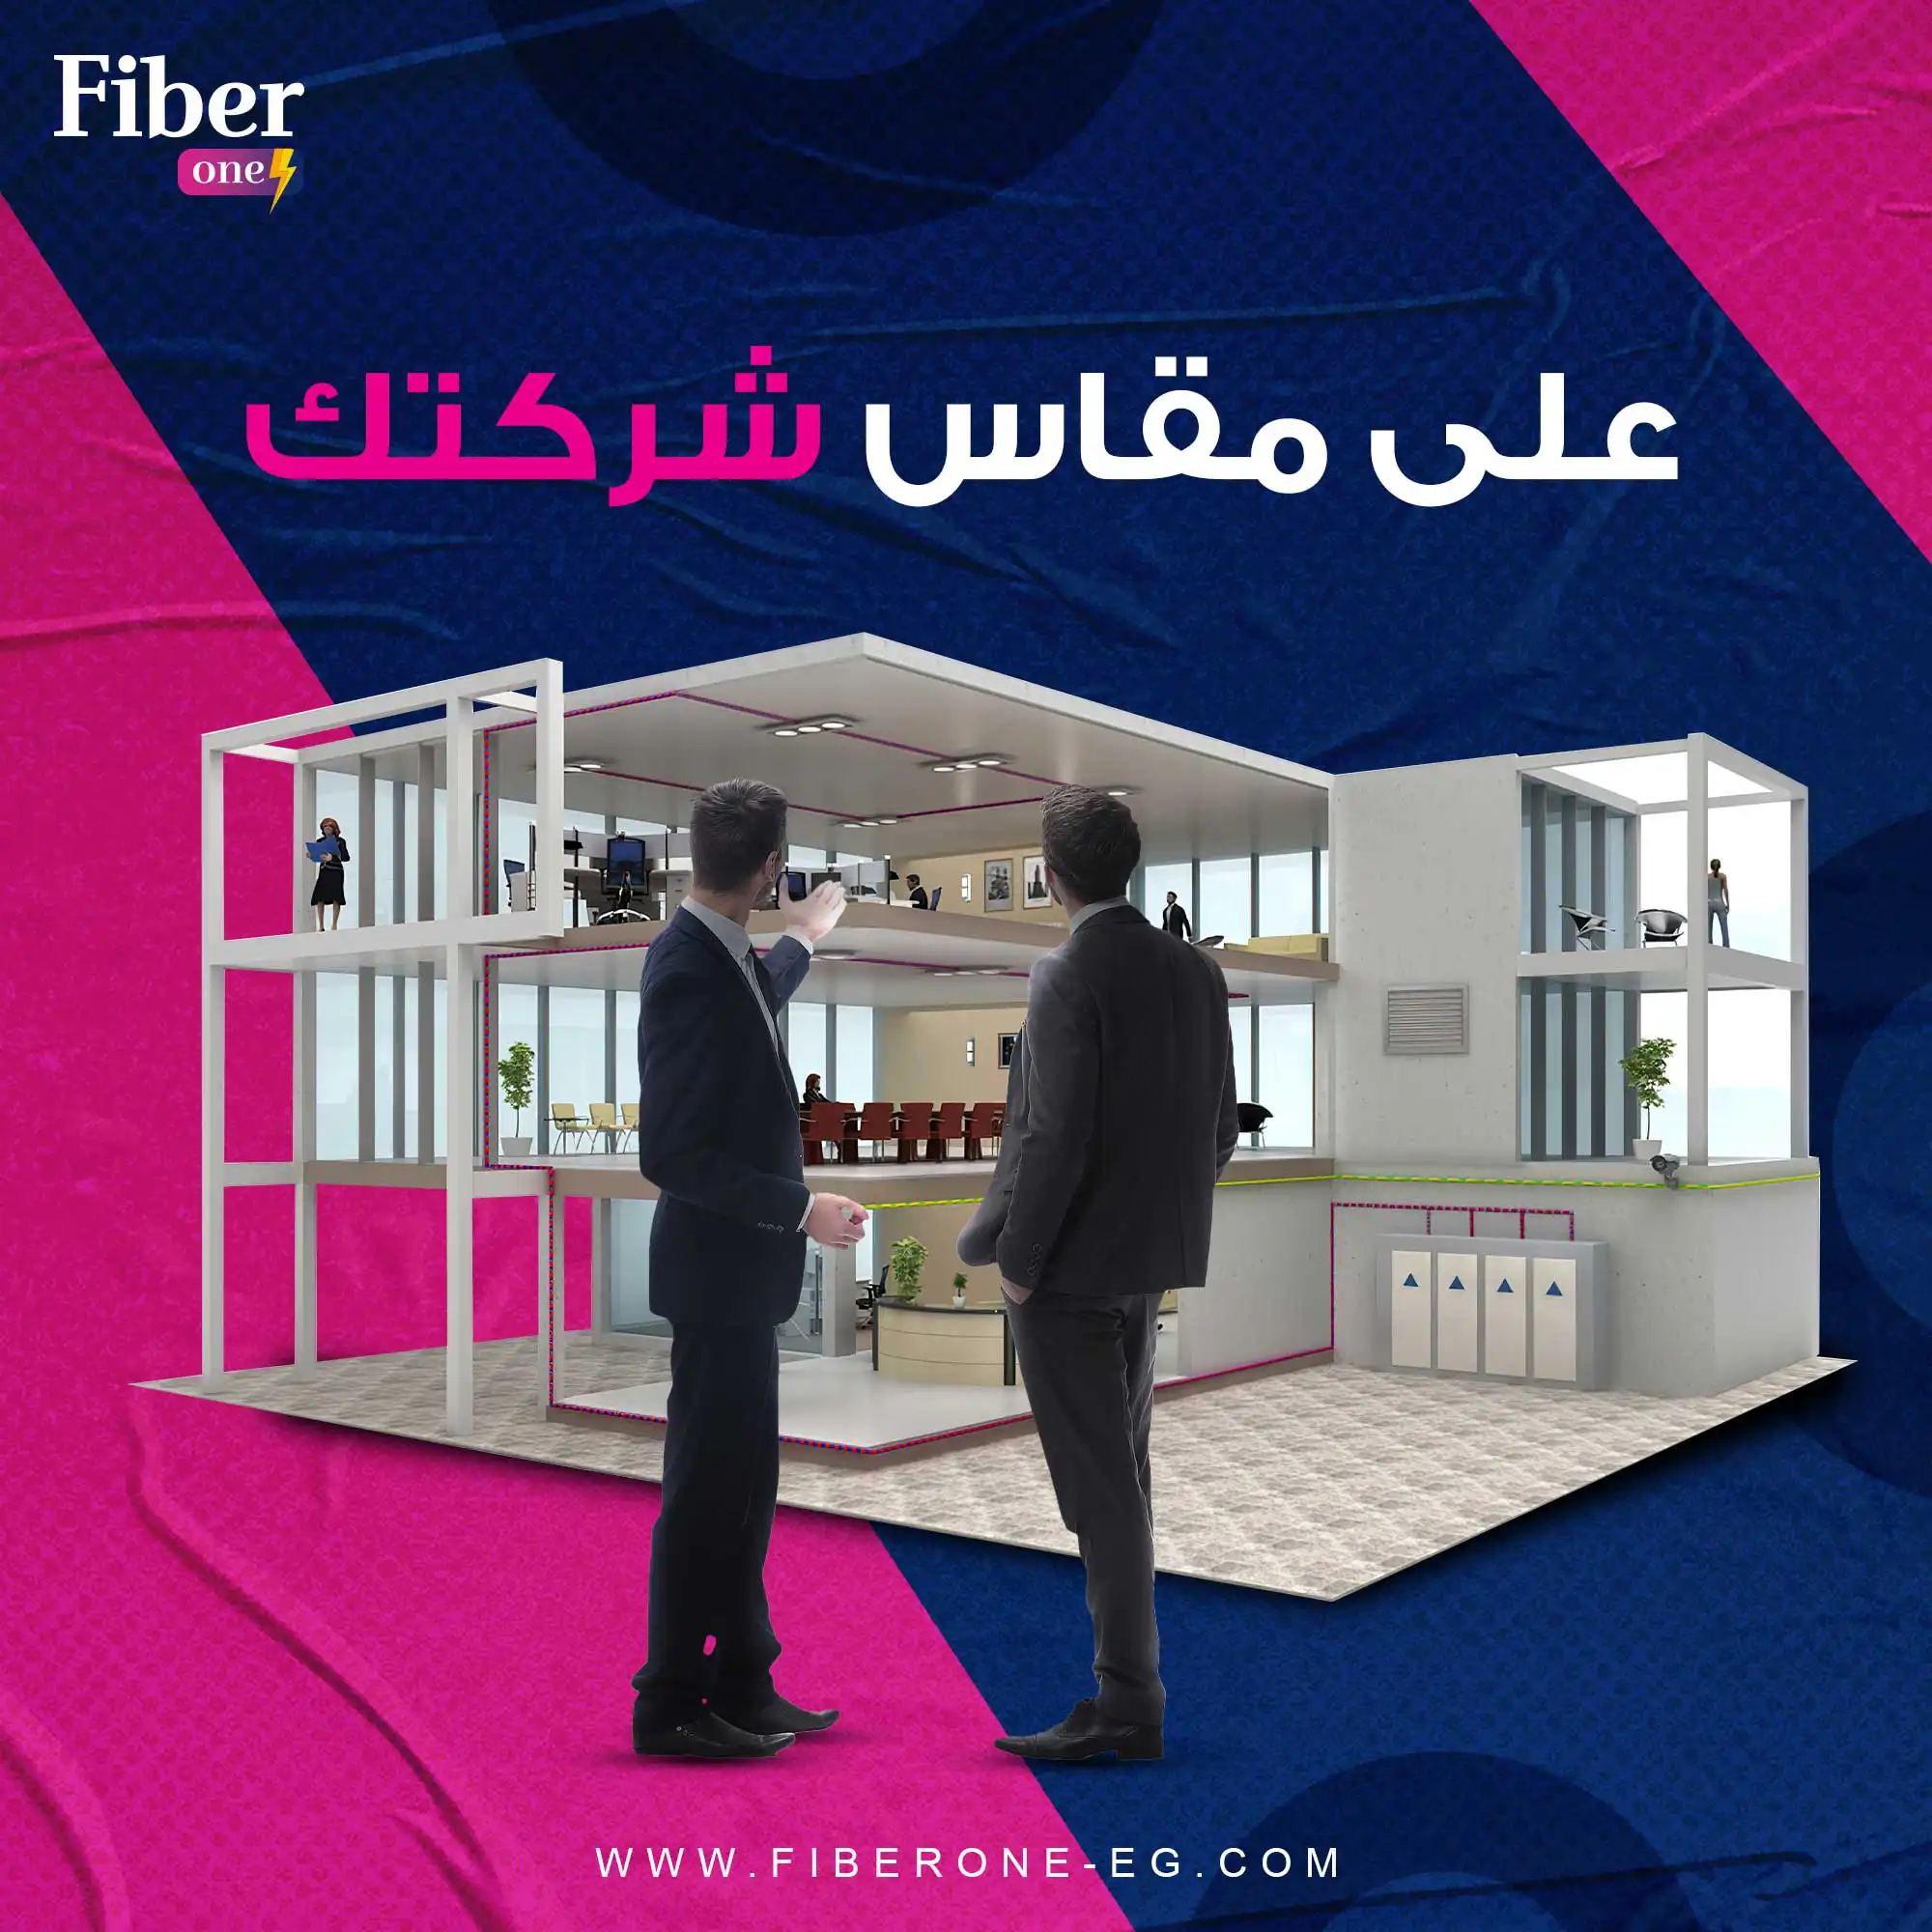 fiber one social media 4